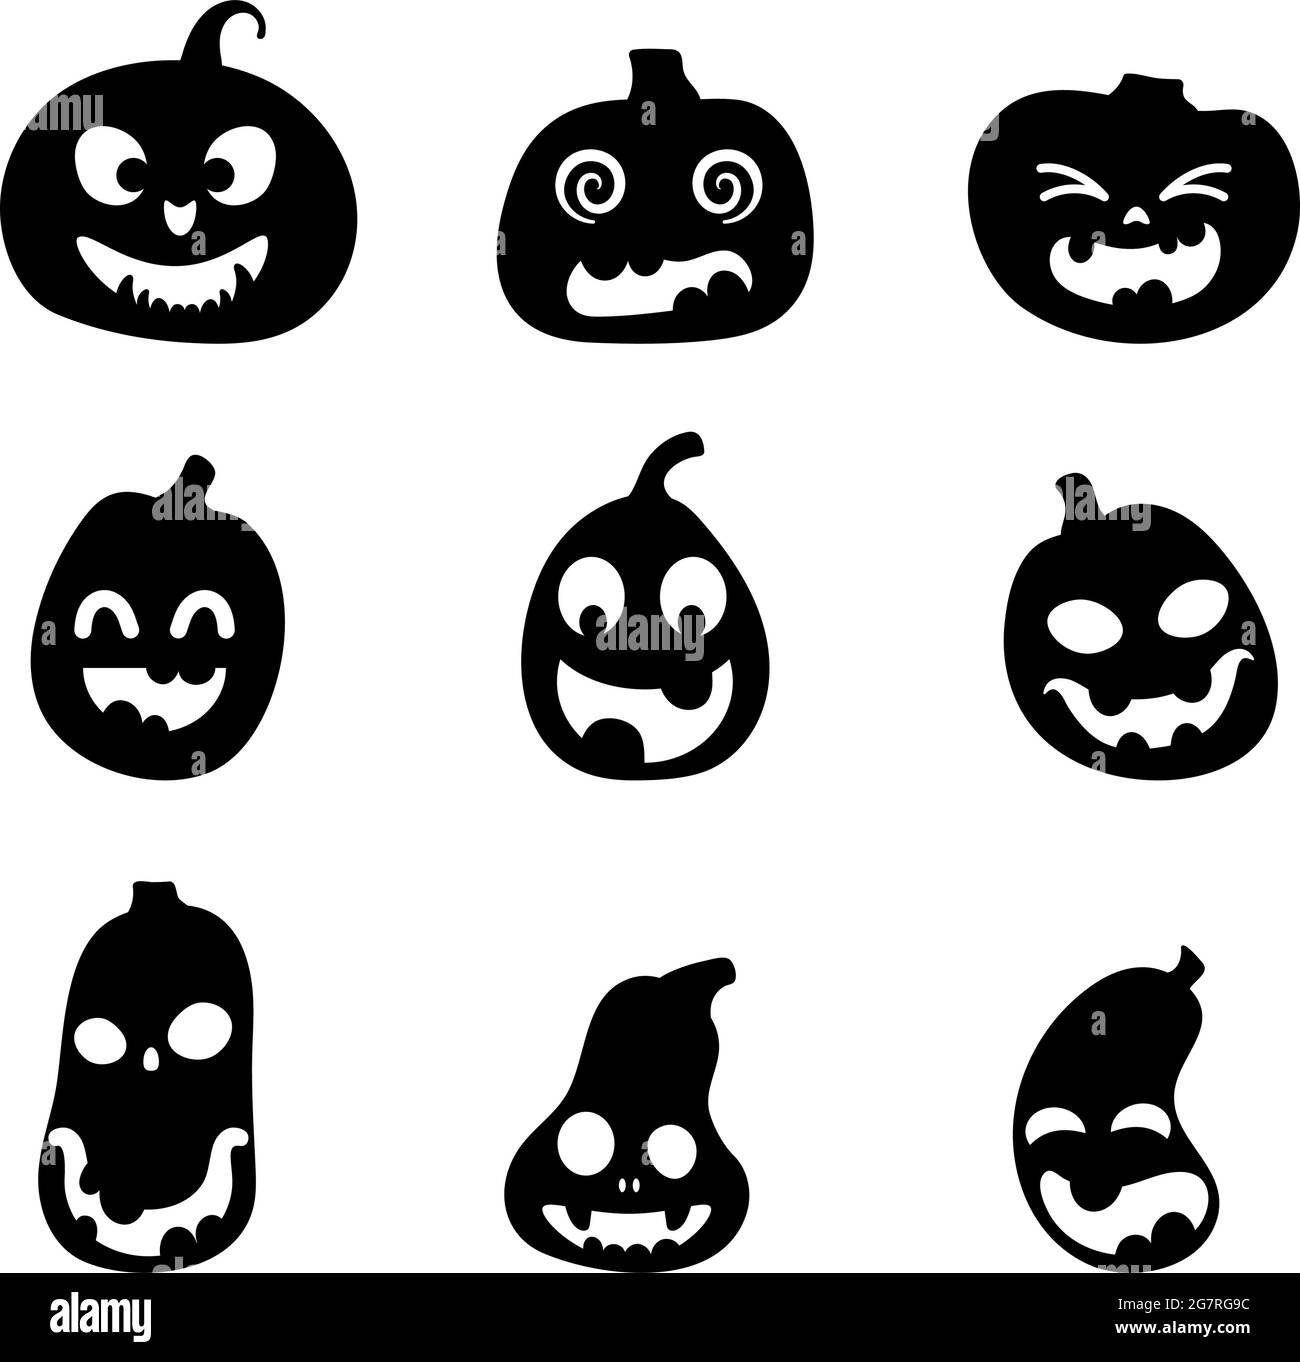 Halloween – ensemble de silhouettes de citrouilles effrayantes. Illustration des expressions du visage de Jack-o-lanterne. Collection simple d'images effrayantes d'horreur de citrouilles. Isola Illustration de Vecteur